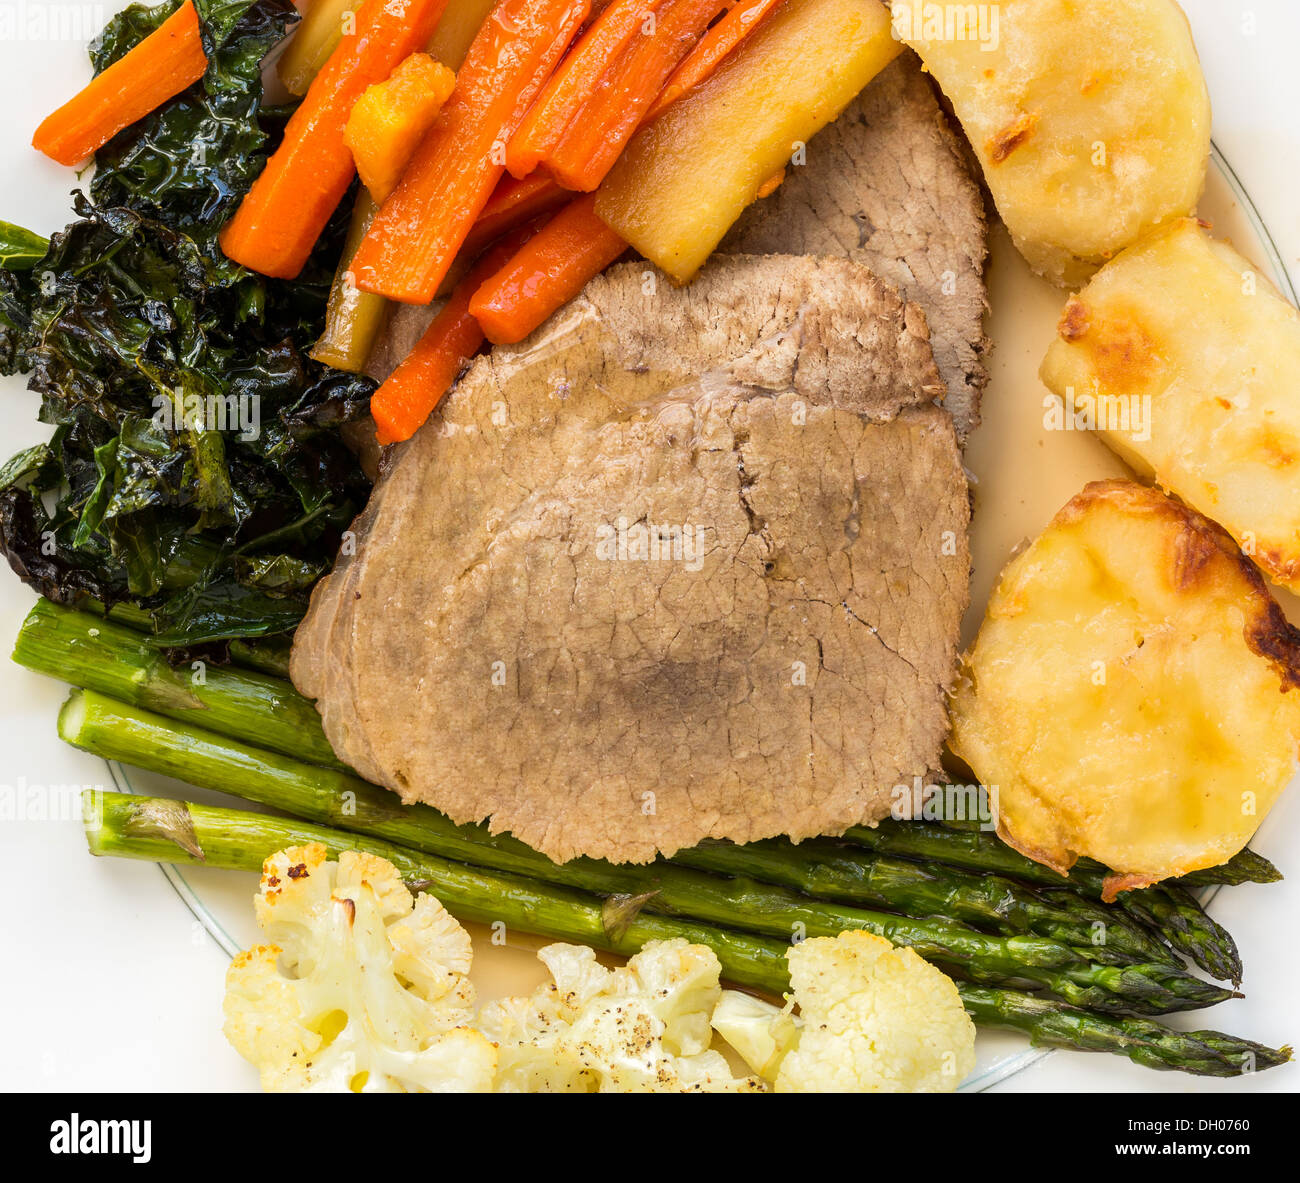 Traditionelle britische Sonntag Mittagessen - Roastbeef, Kartoffeln, Karotten, Pastinaken, Spargel, Grünkohl und Blumenkohl auf einer Platte Stockfoto